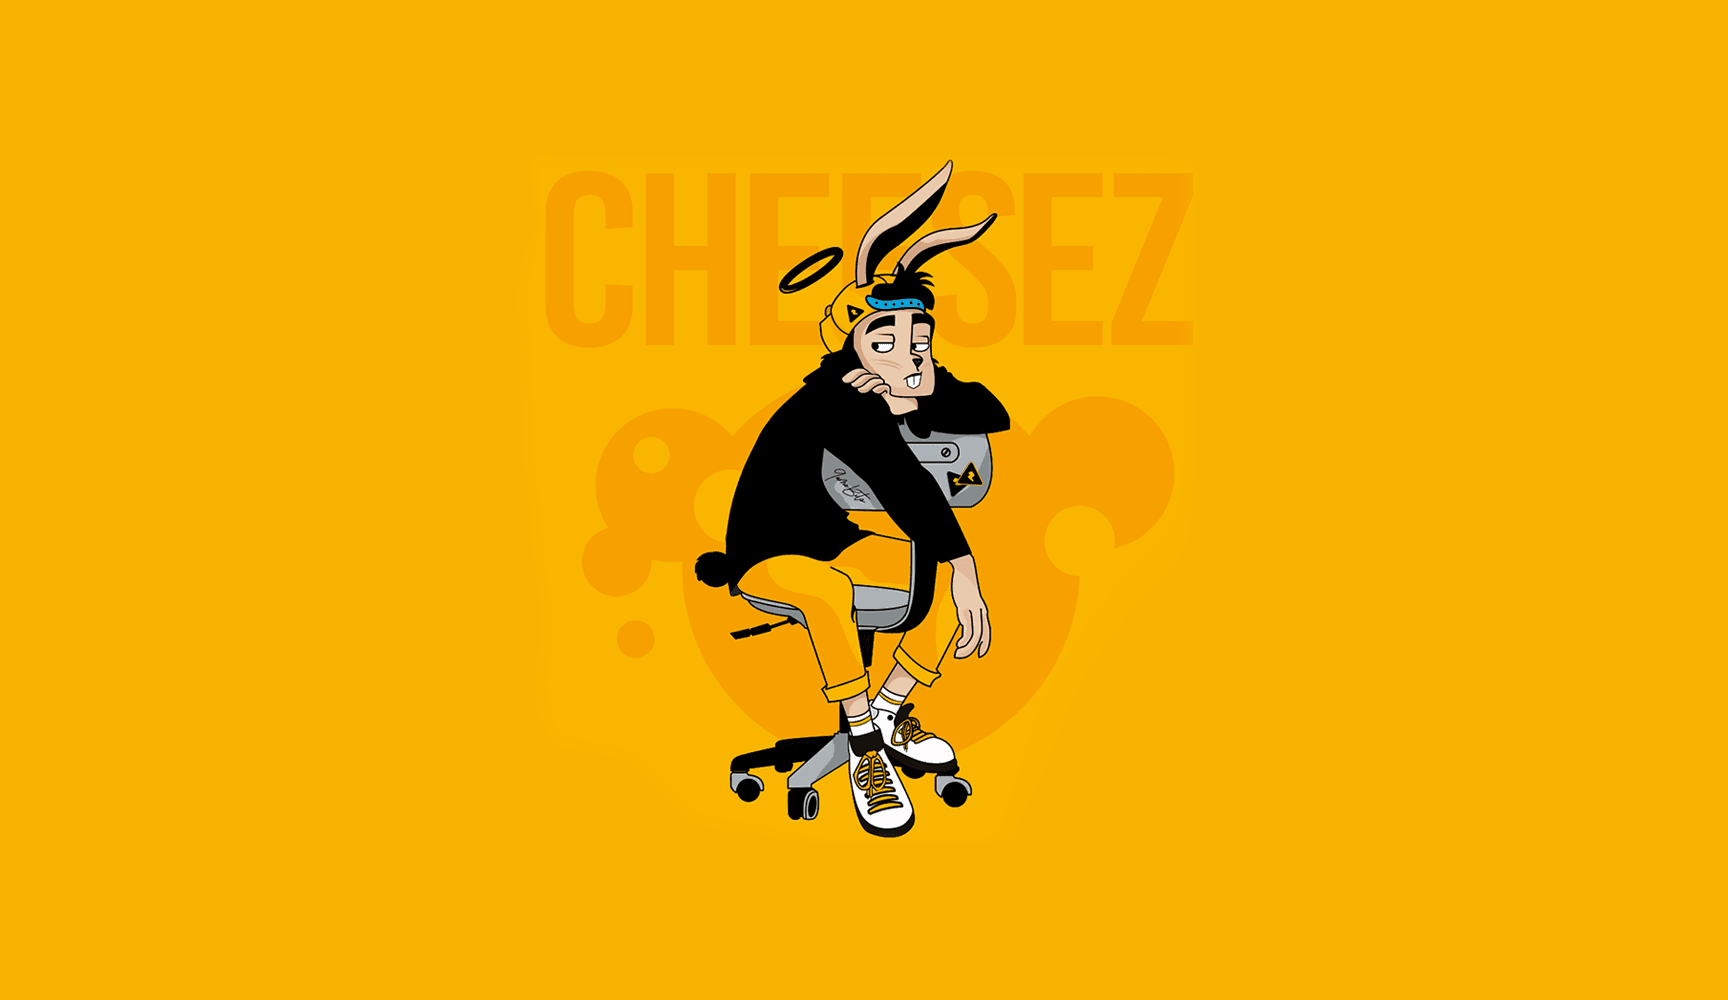 Cheesezz バナー